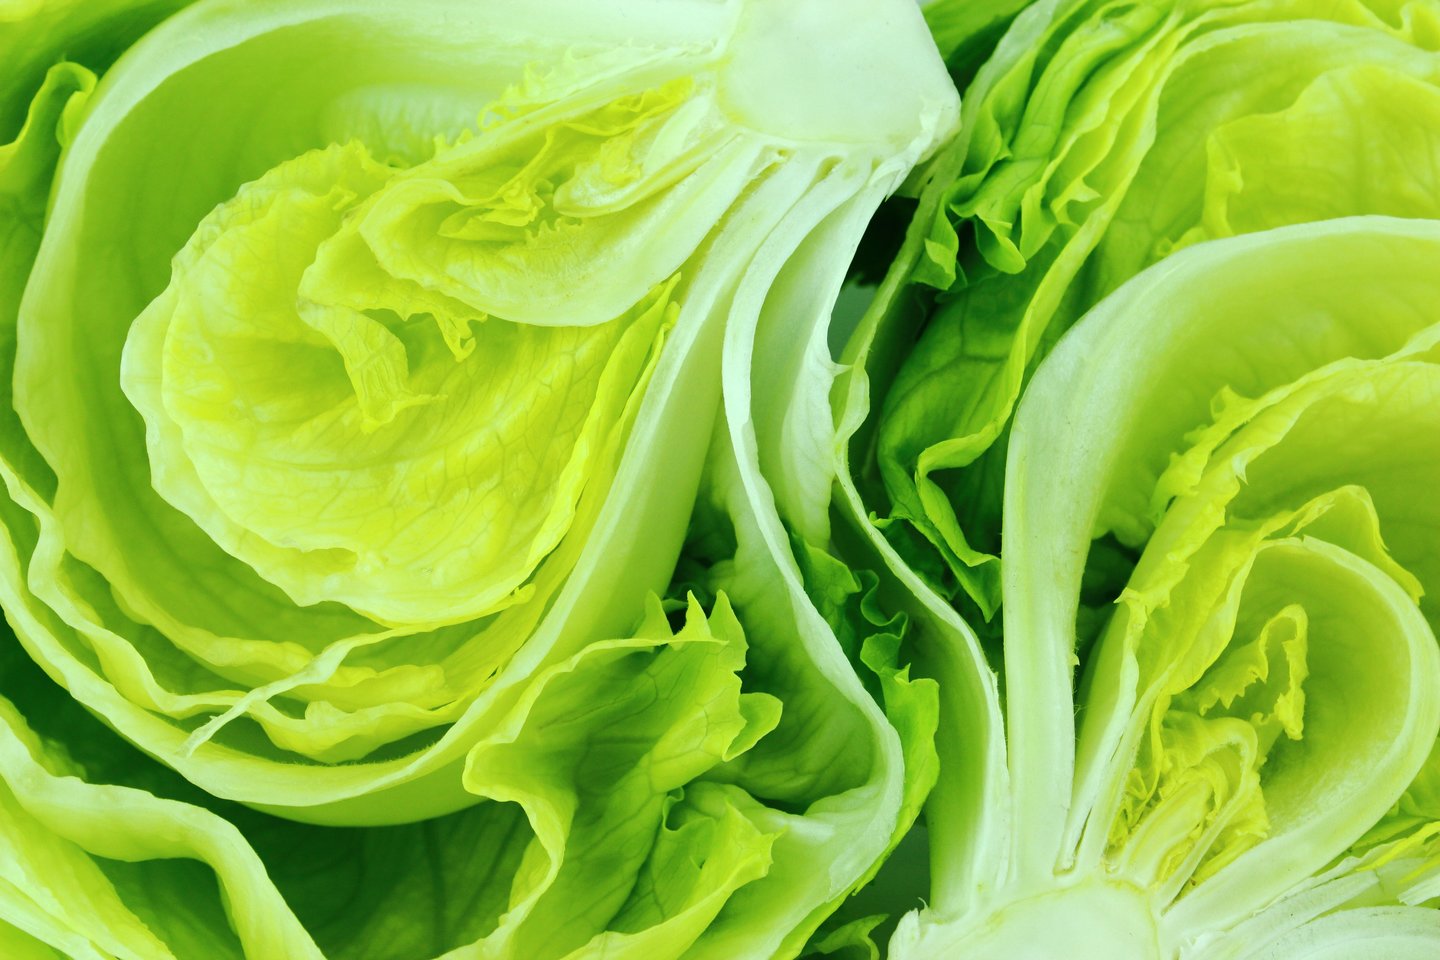 Jei tinkamai pasirūpinsite salotomis, jos šviežios išlikti gali net iki 10 dienų.<br>123rf nuotr.